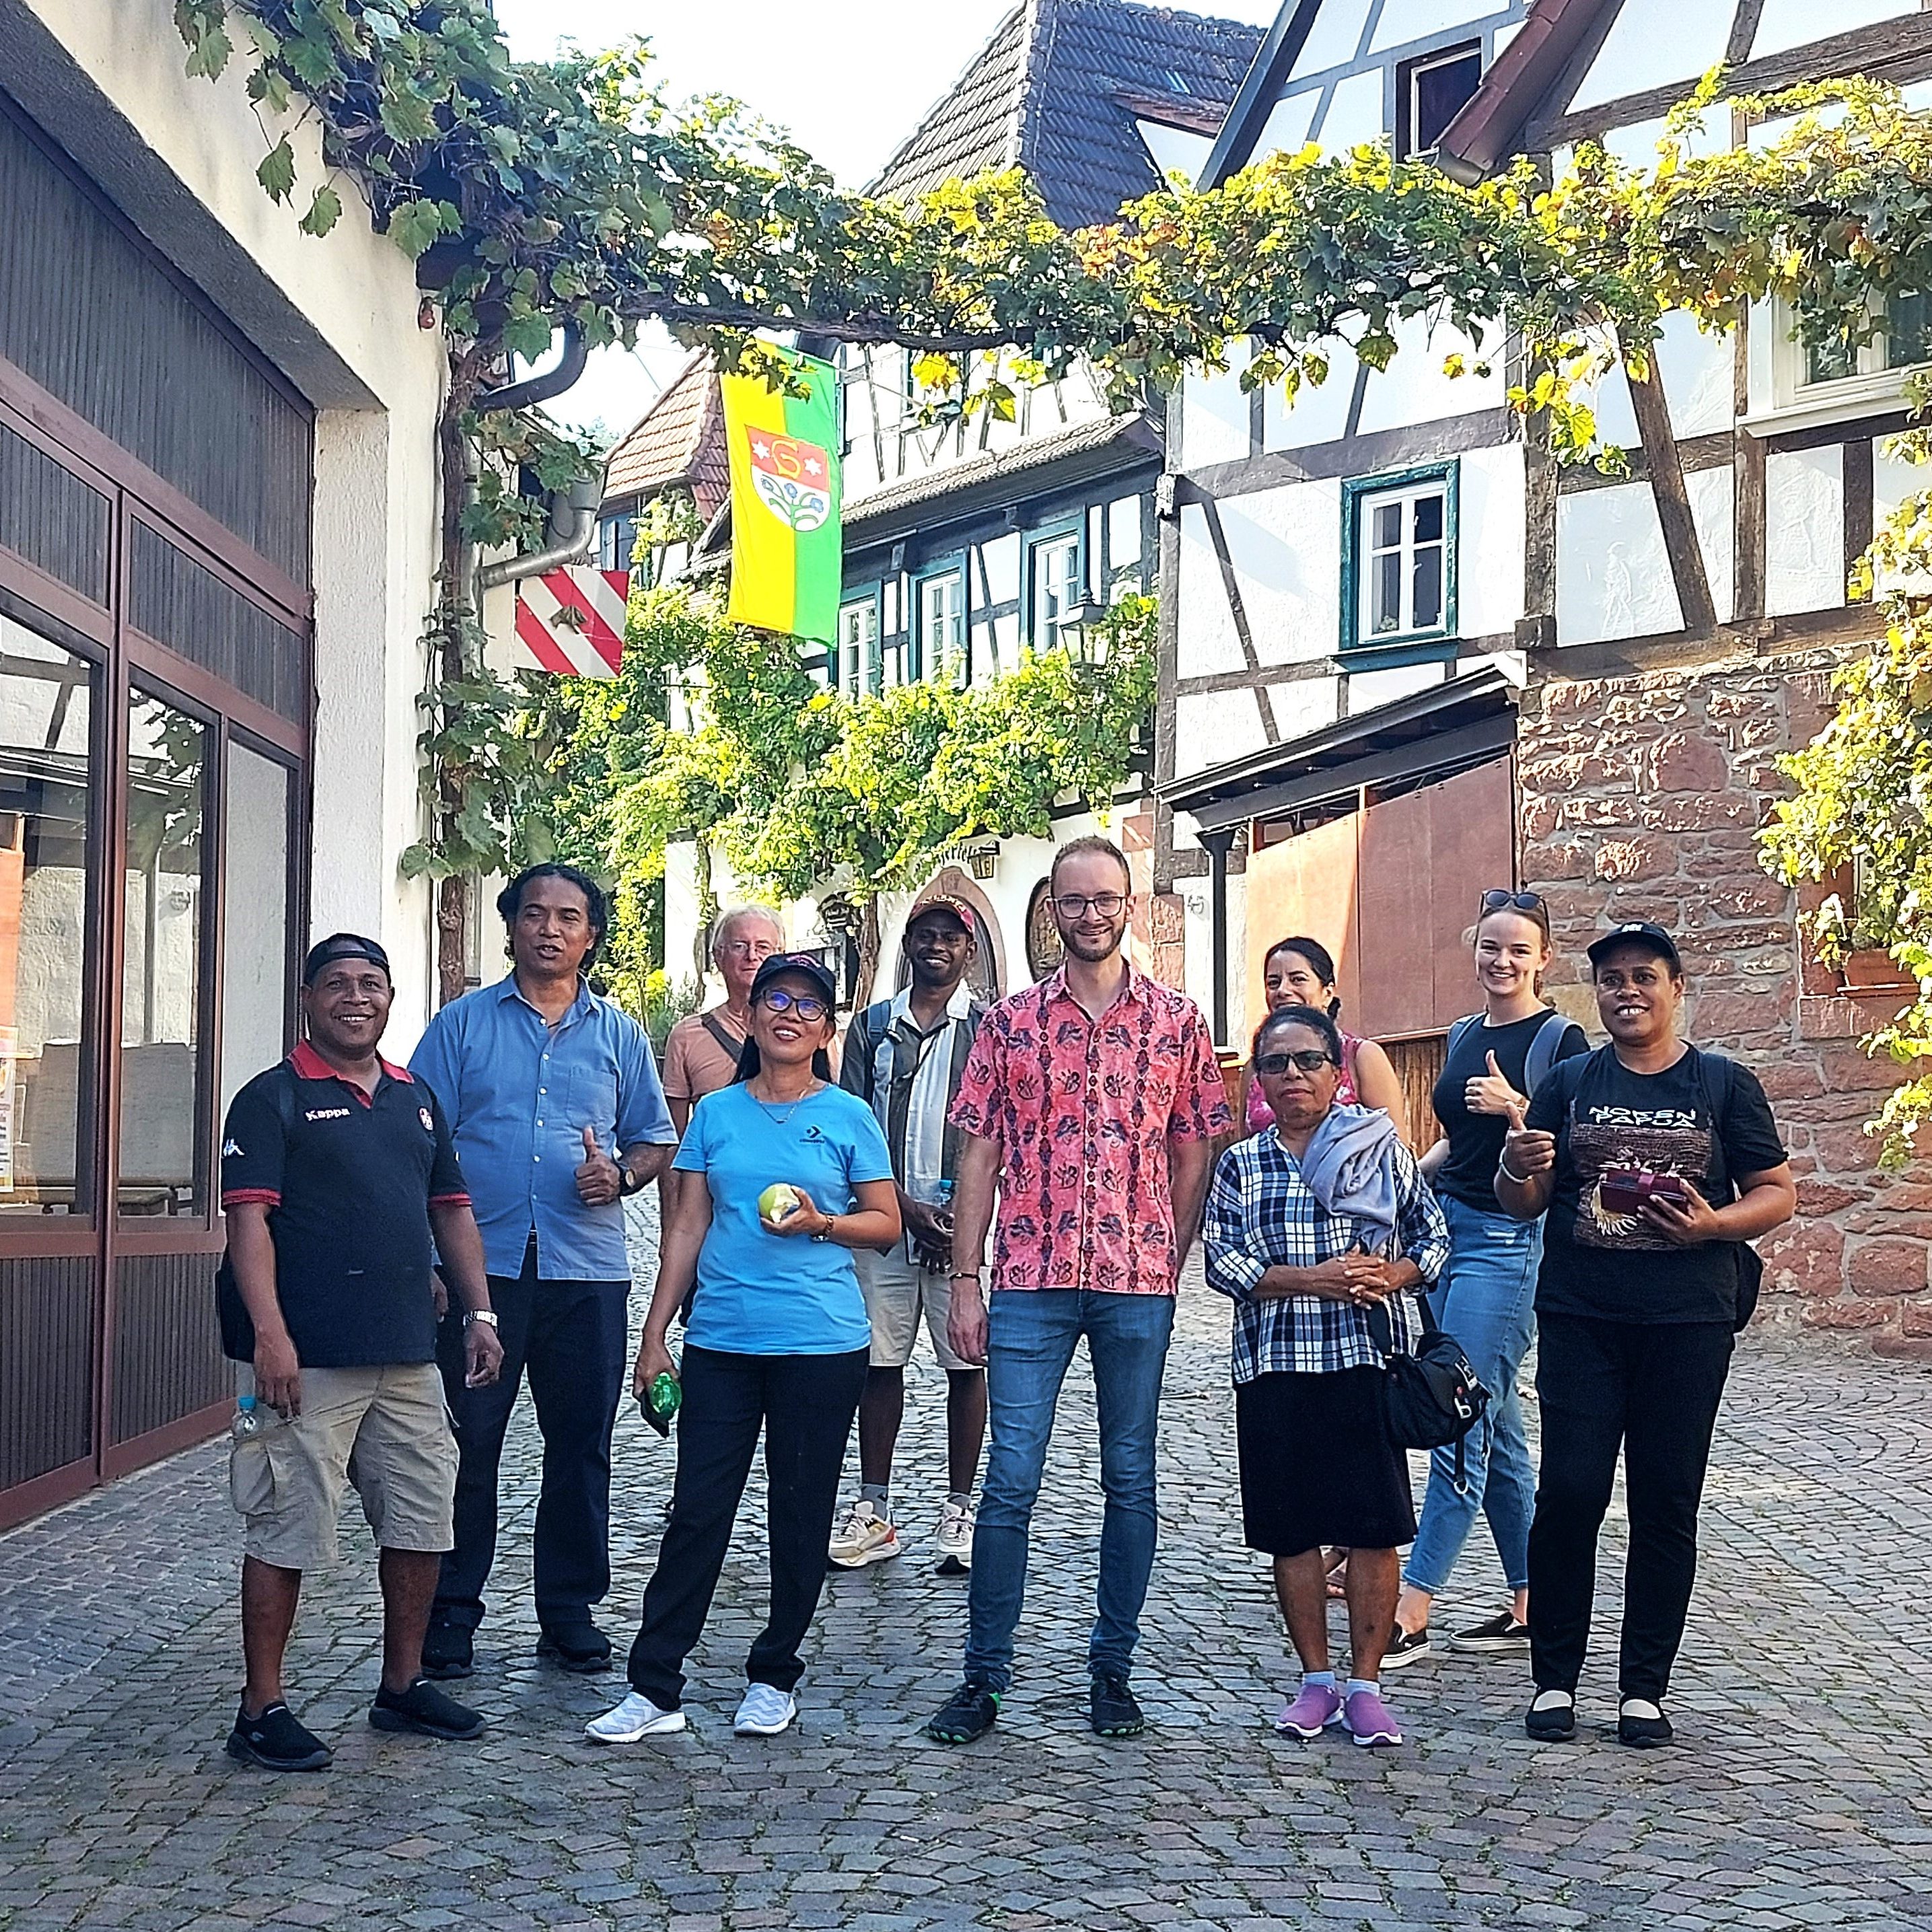 Pfalz hautnah erlebt: Weinprobe für Besuch aus Papua